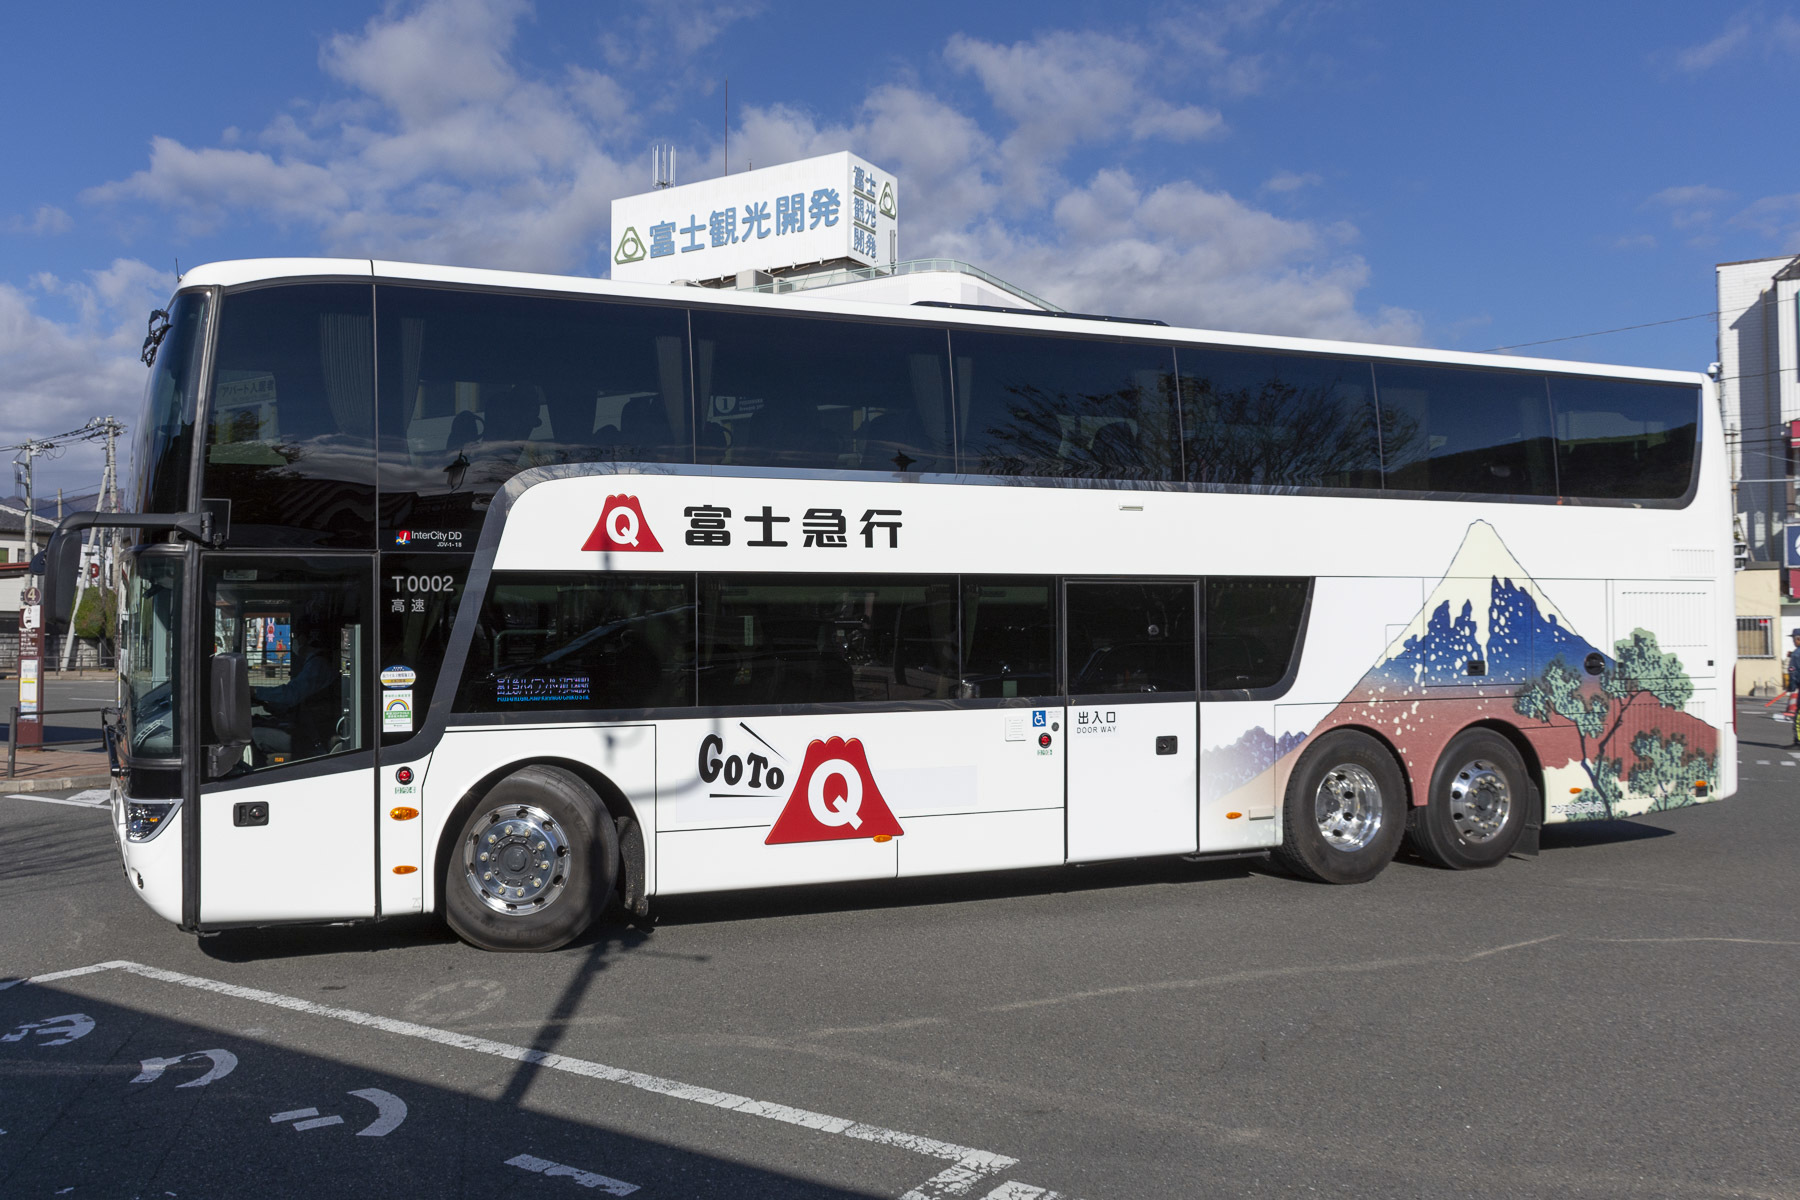 富士急バス / Re:ゼロから始める富士急ハイランド生活ラッピングバス_d0226909_21553340.jpg